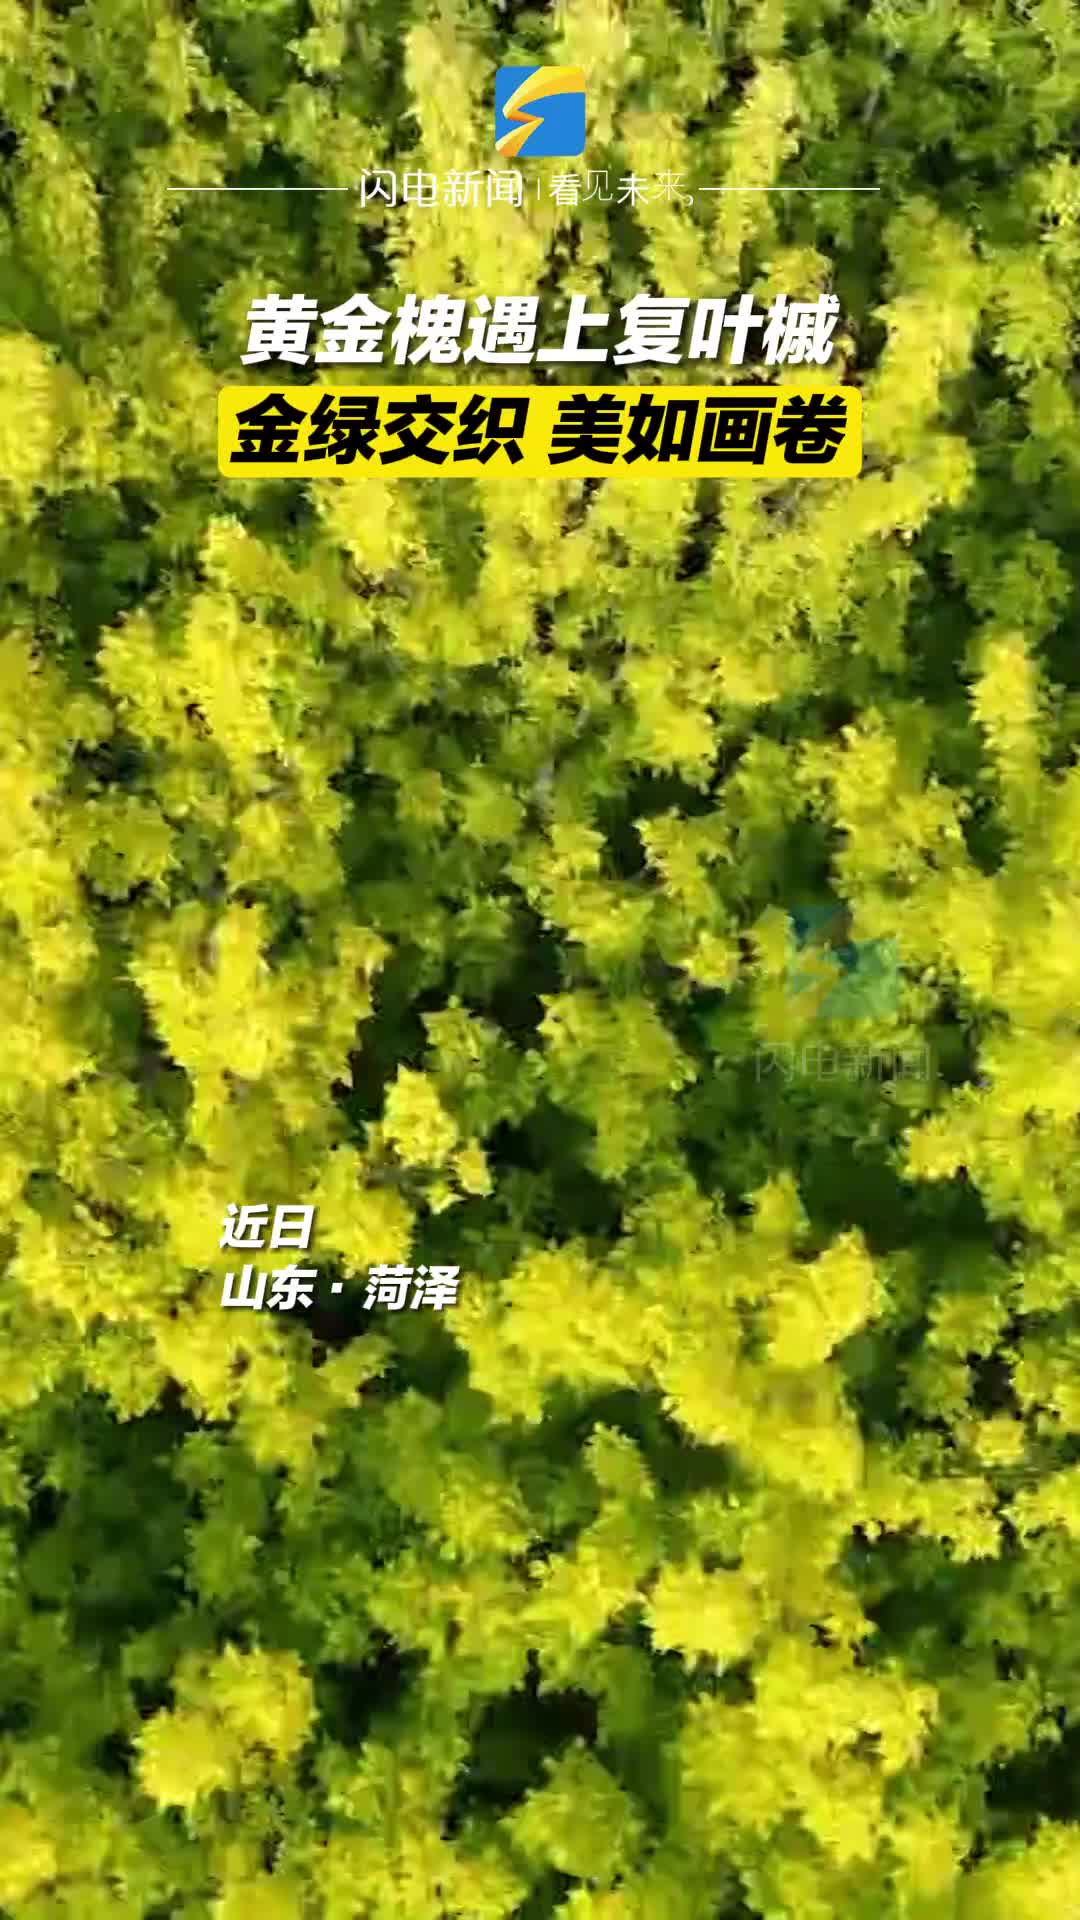 黄金槐遇上复叶槭 菏泽定陶金绿交织美如画卷